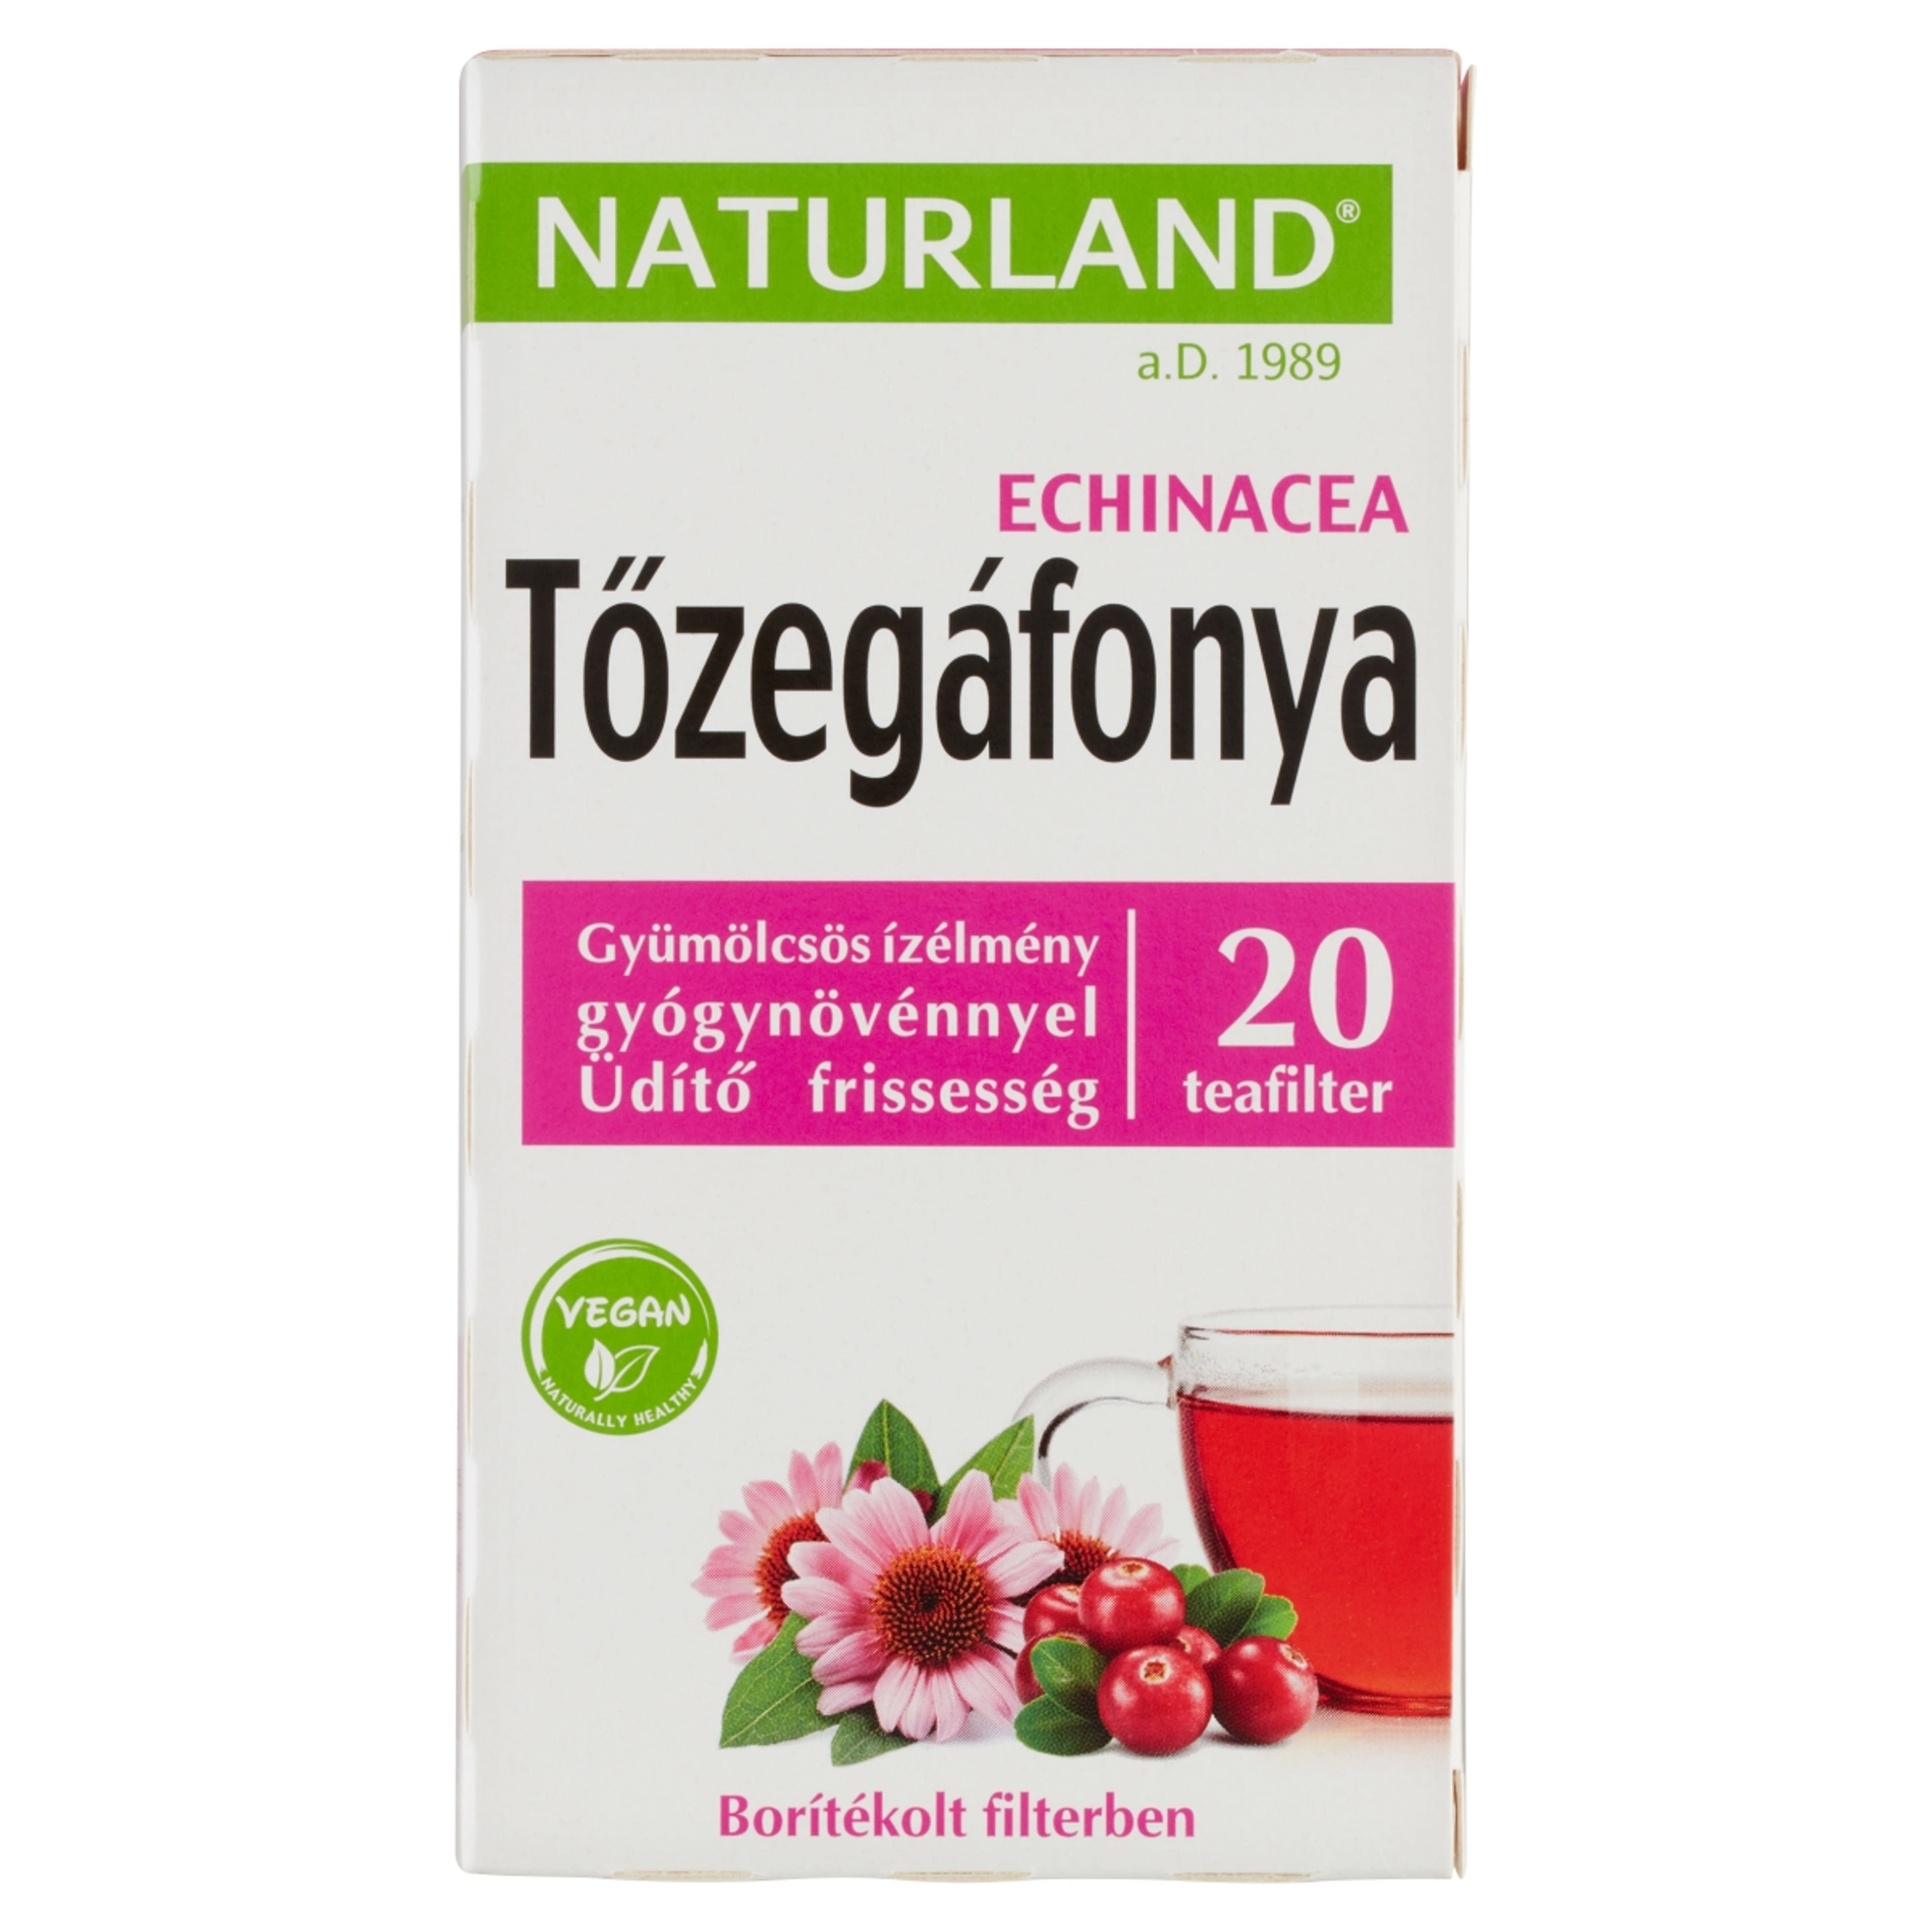 Naturland gyümölcstea tőzegáfonya echinacea - 20 filter - 40 g-1